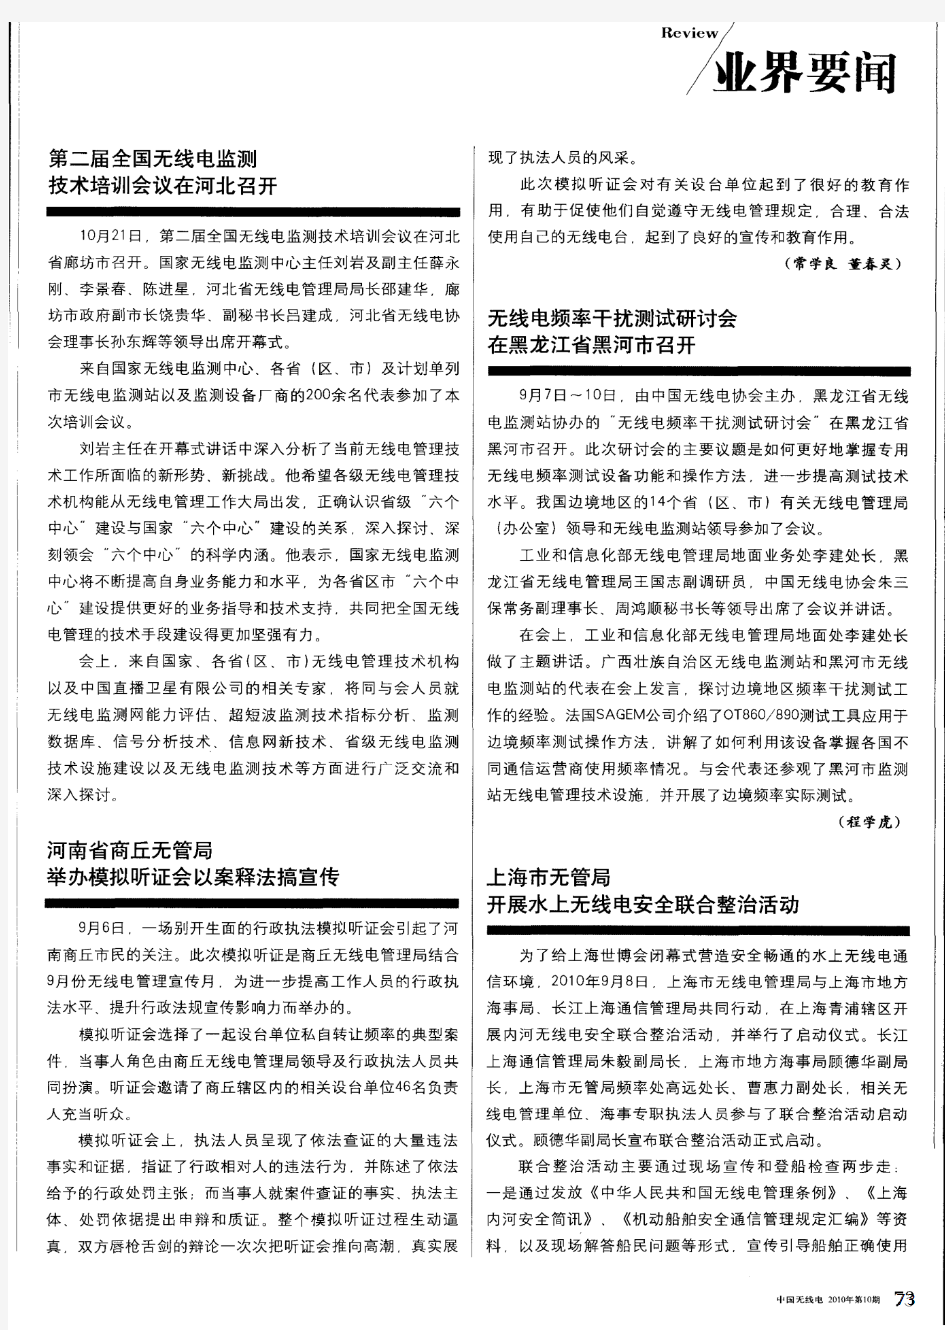 河南省商丘无管局举办模拟听证会以案释法搞宣传